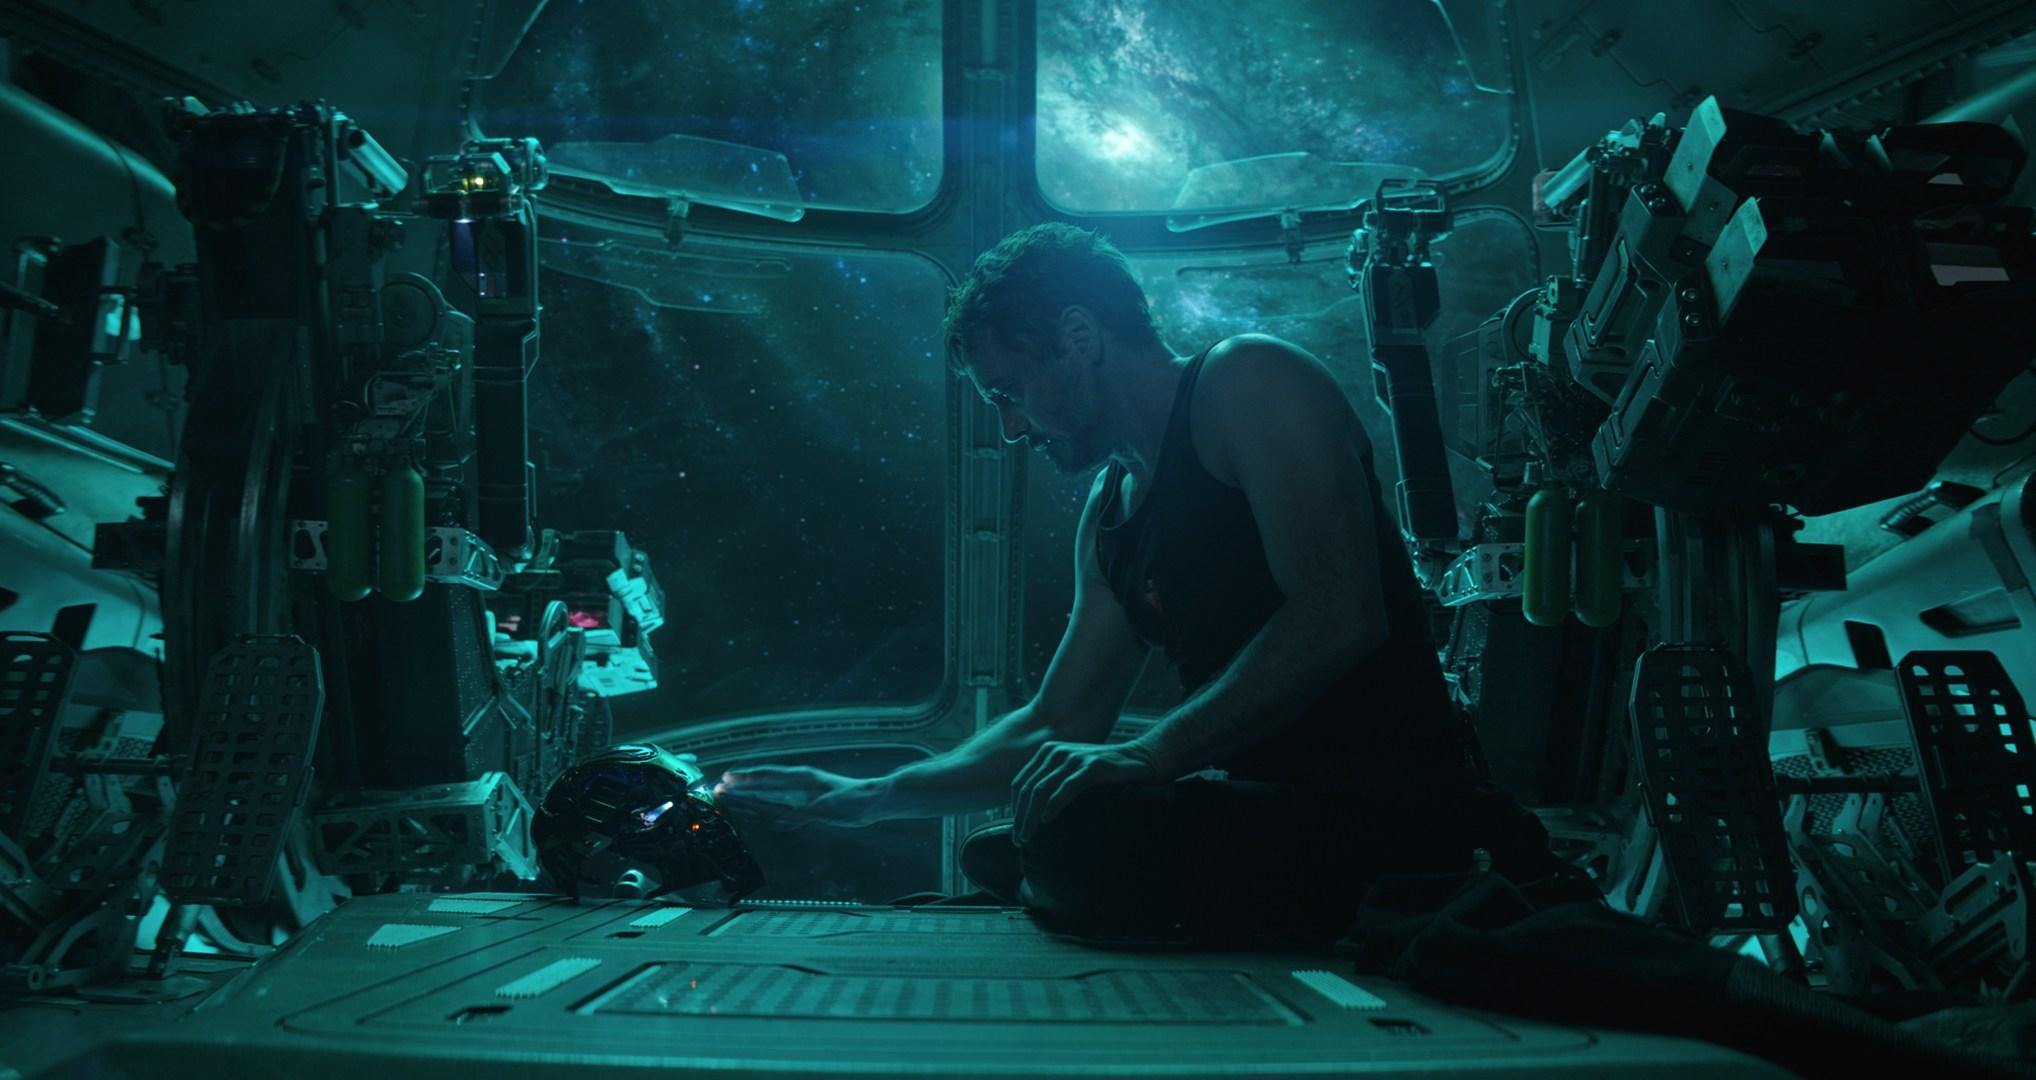 Marvel Studios releases first official still from 'Avengers: Endgame